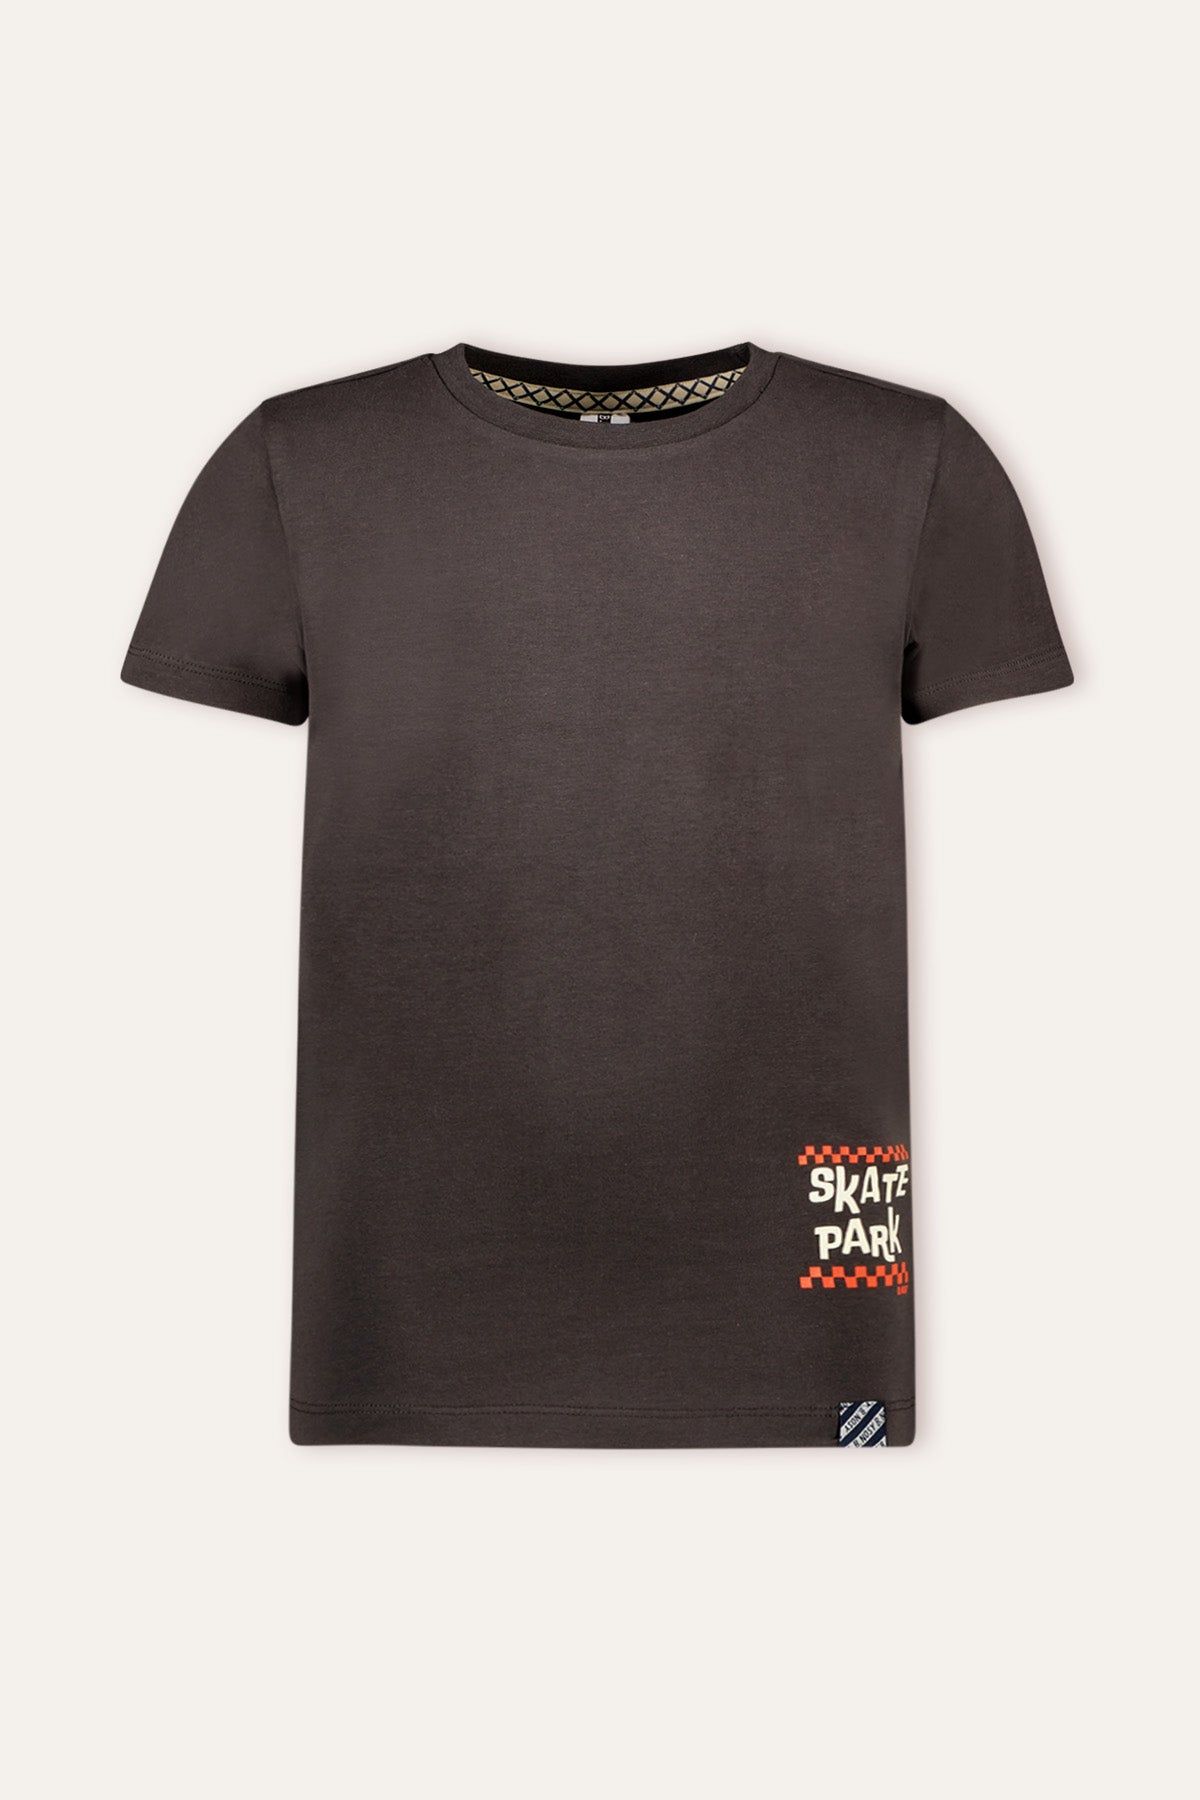 T-Shirt Roger Boys t-shirt grijs